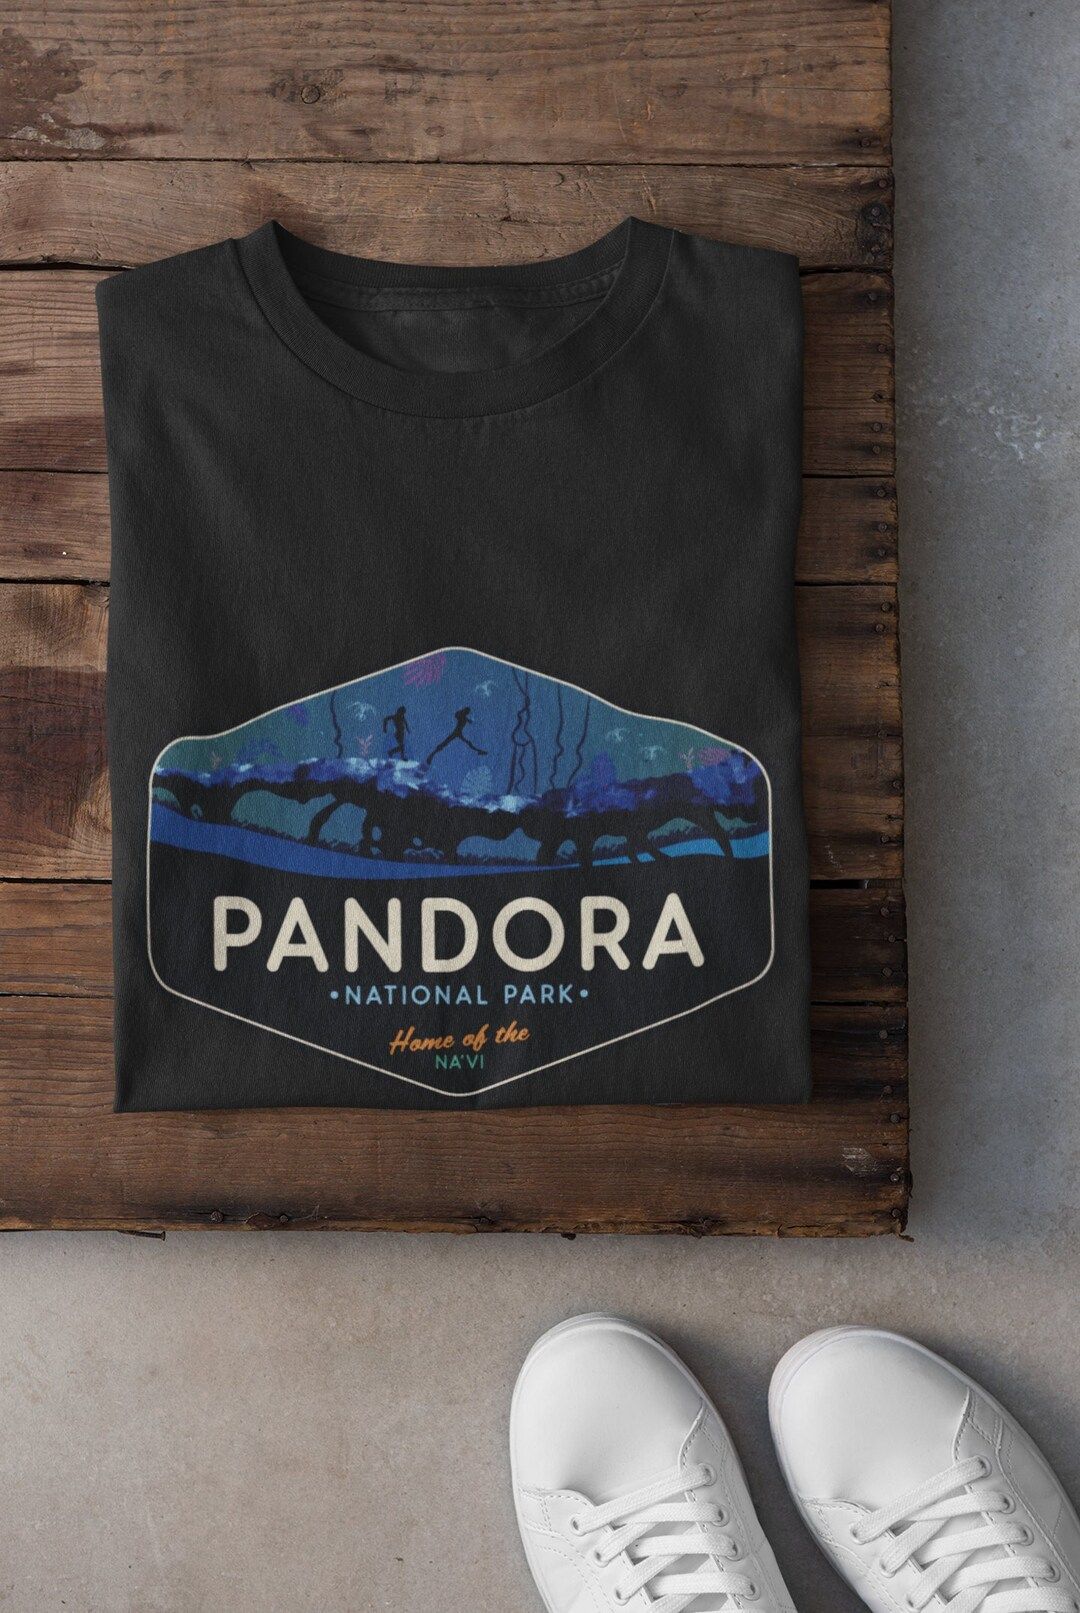 Avatar T-Shirt, Pandora National Park Shirt, Animal Kingdom Shirt, Unisex, Disney T-Shirt, The Wa... | Etsy (US)